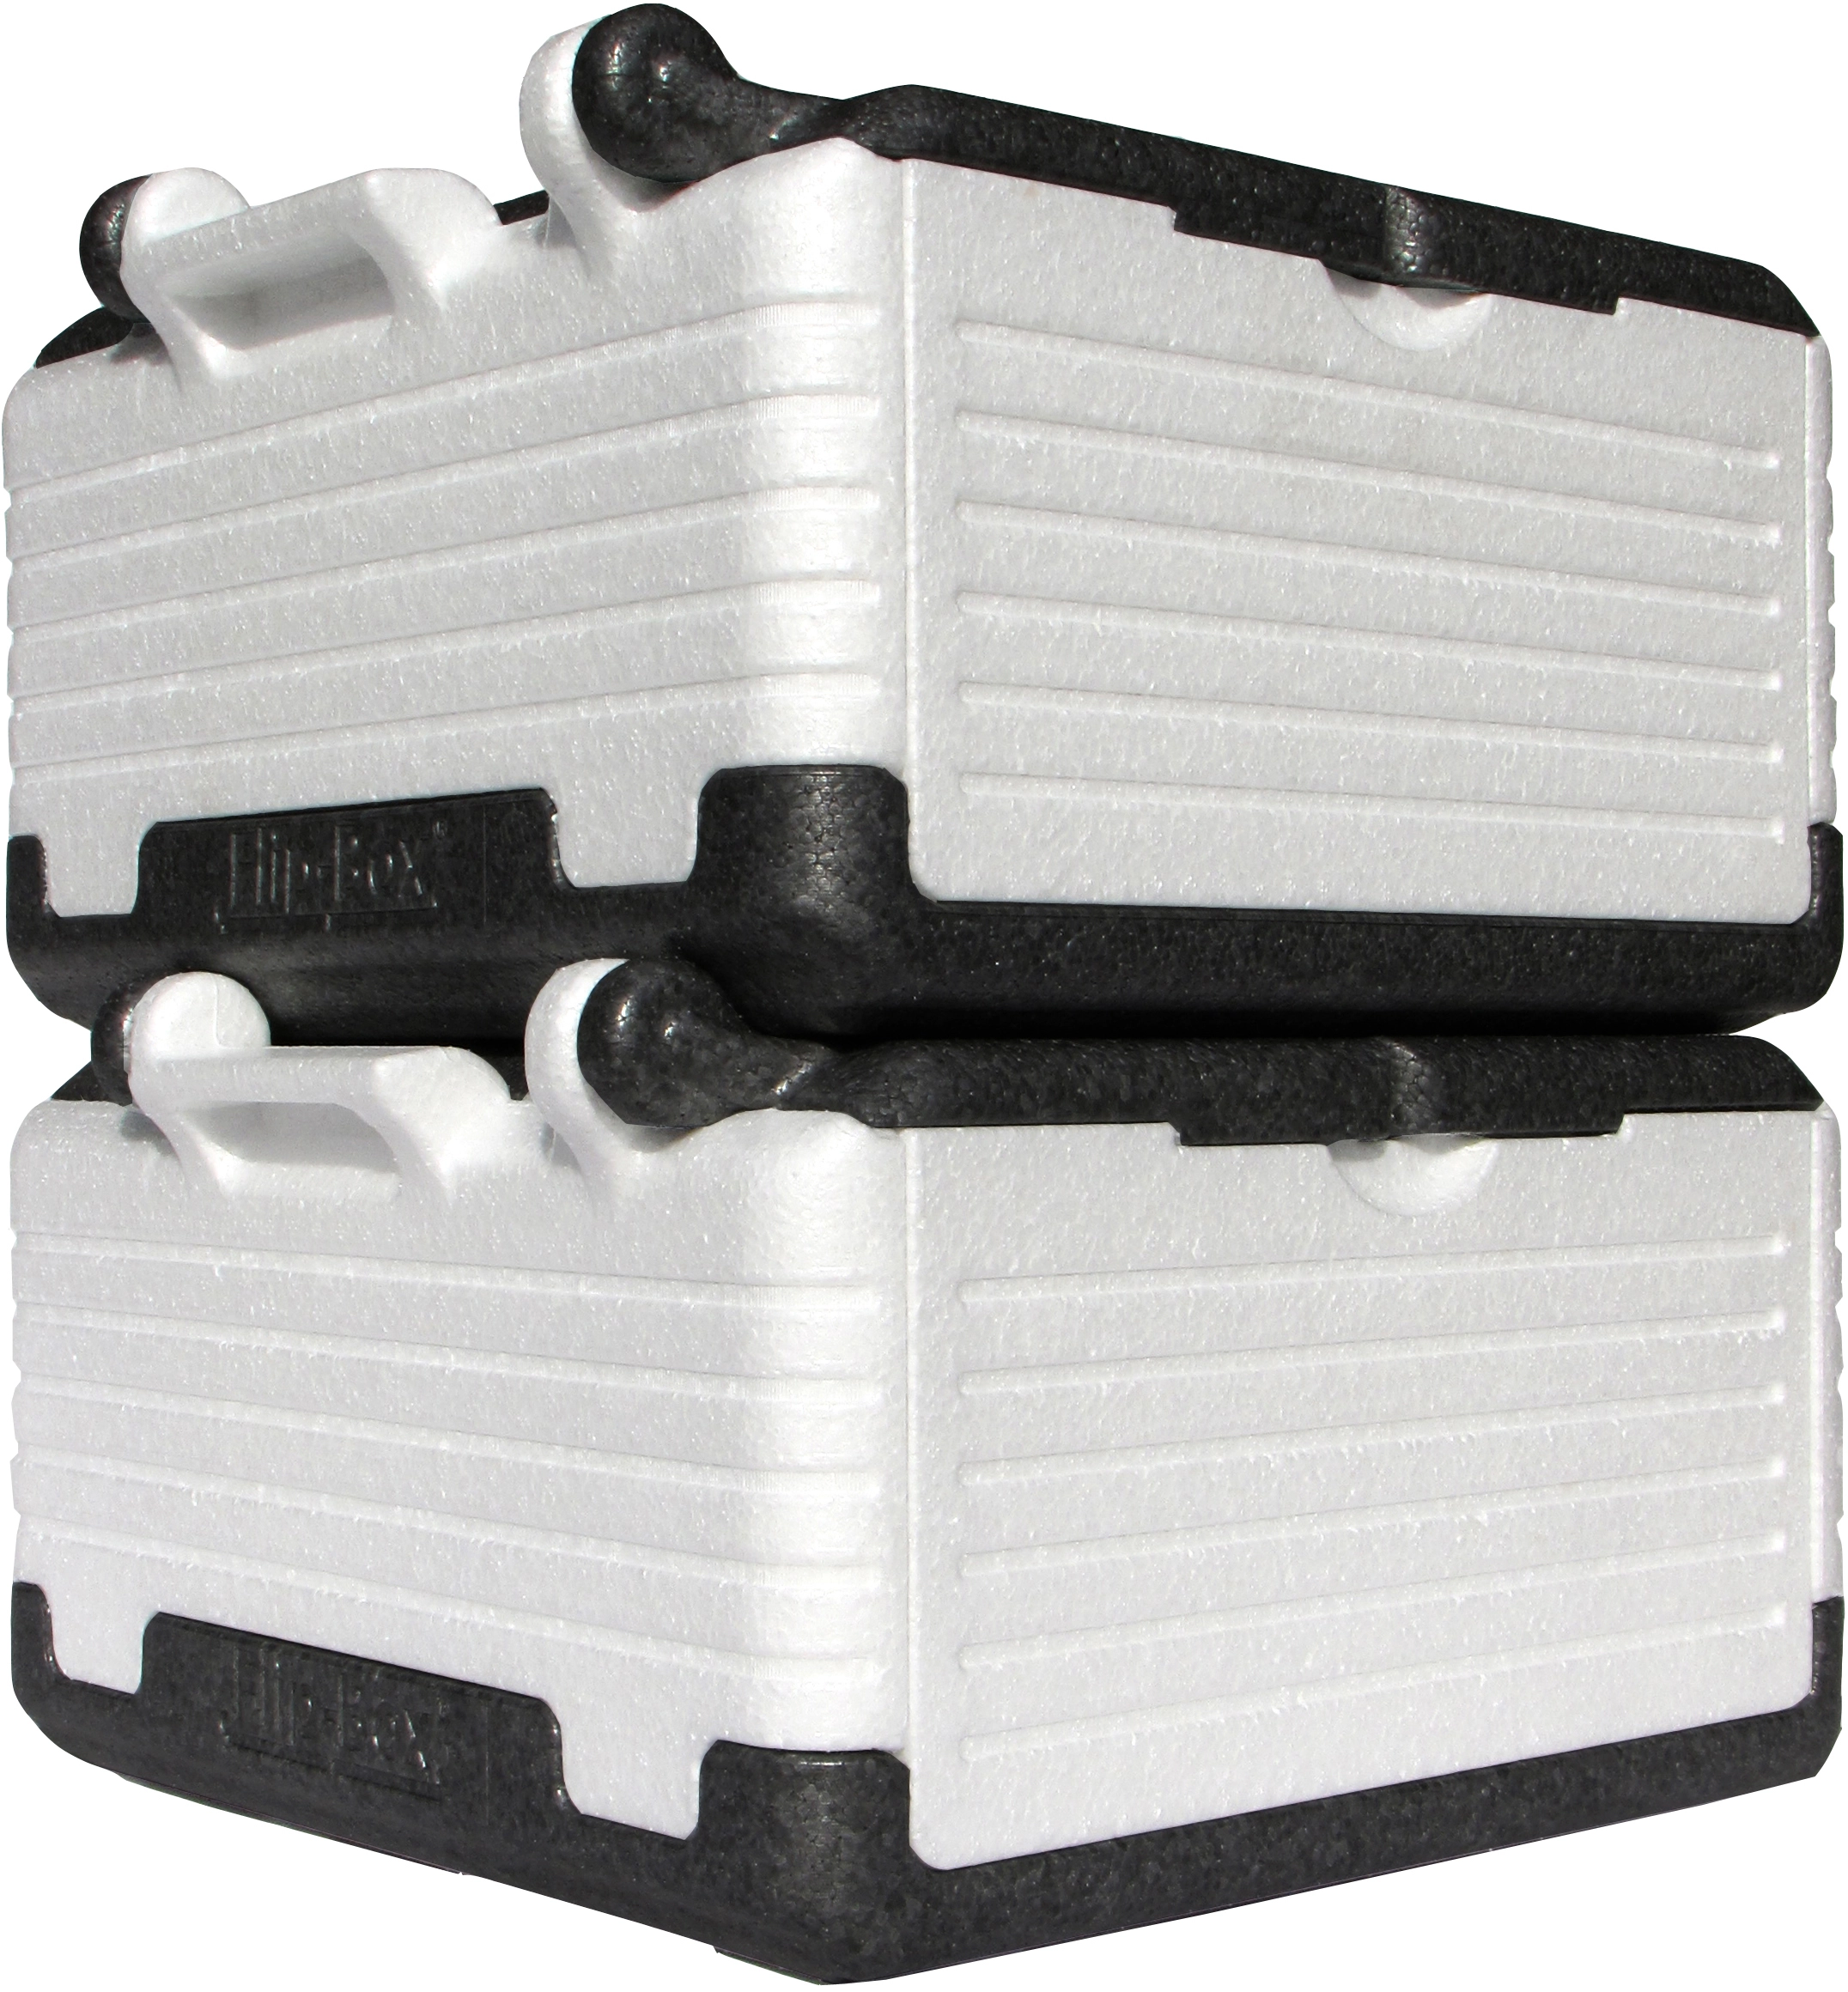 Flip-Box Classic Thermobox klappbar 23 l kaufen bei OBI